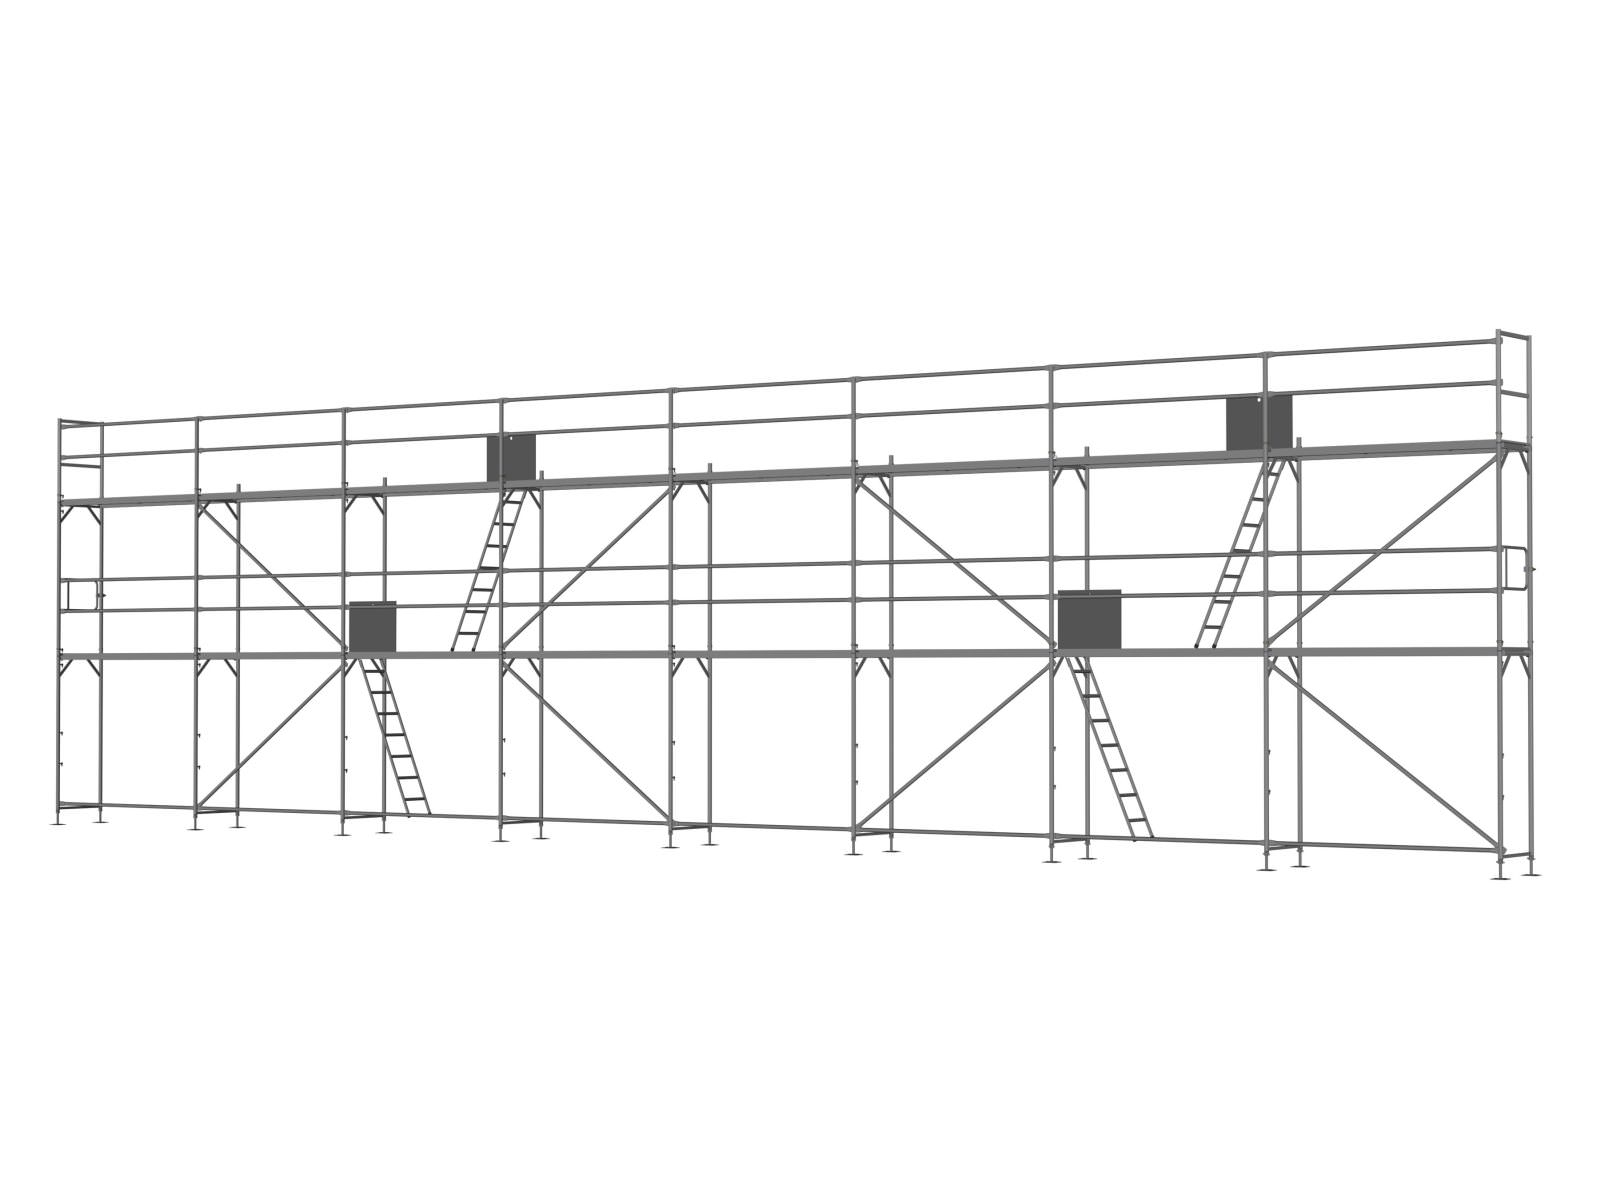 Stahl Traufseitengerüst 120 m², Feldlänge 2,5 m - Basis-Gerüst inkl. Aufstieg & Befestigung